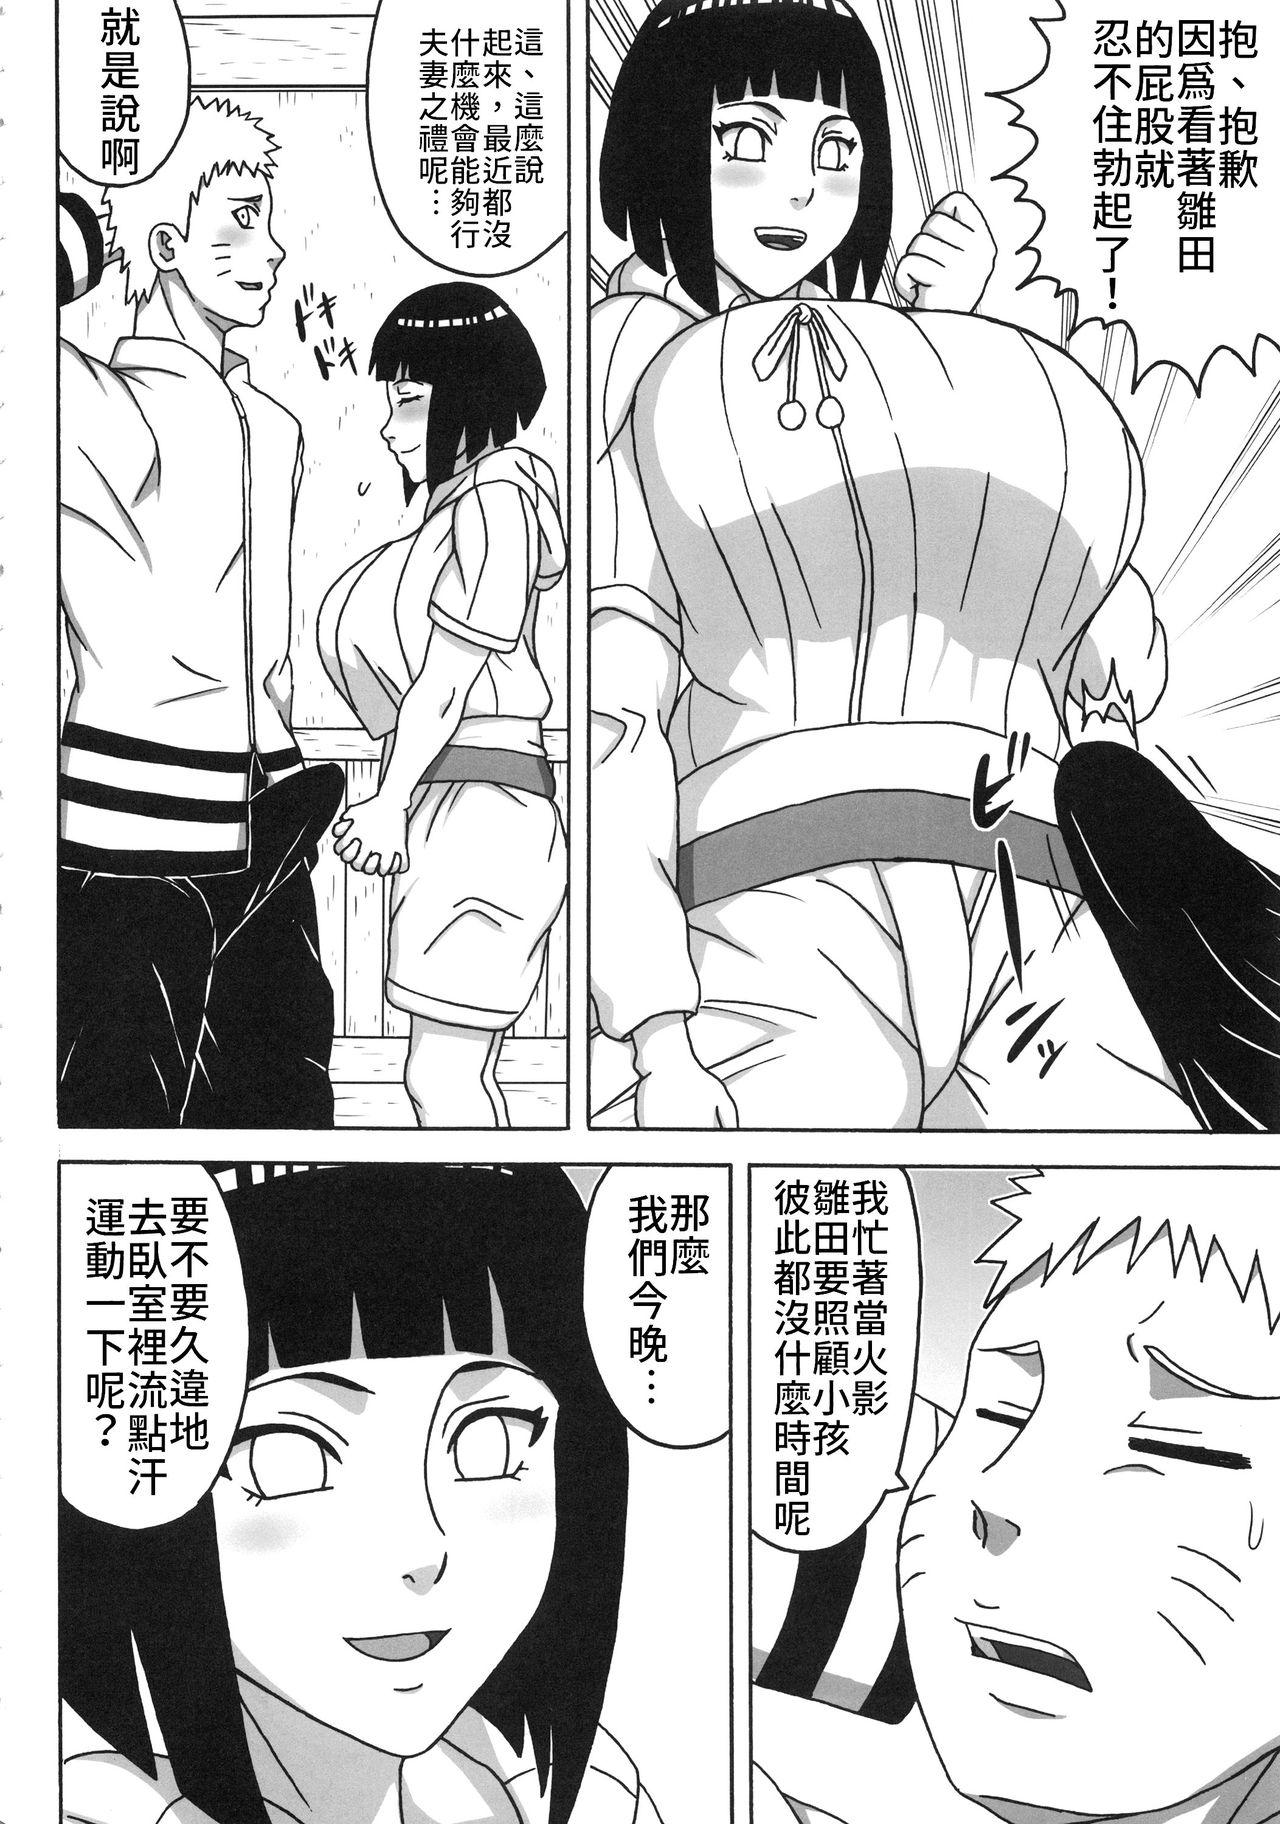 Casero Uzumaki-san ni Omotenashi | 給漩渦先生獻上服務吧♥ - Naruto Boruto Piss - Page 6